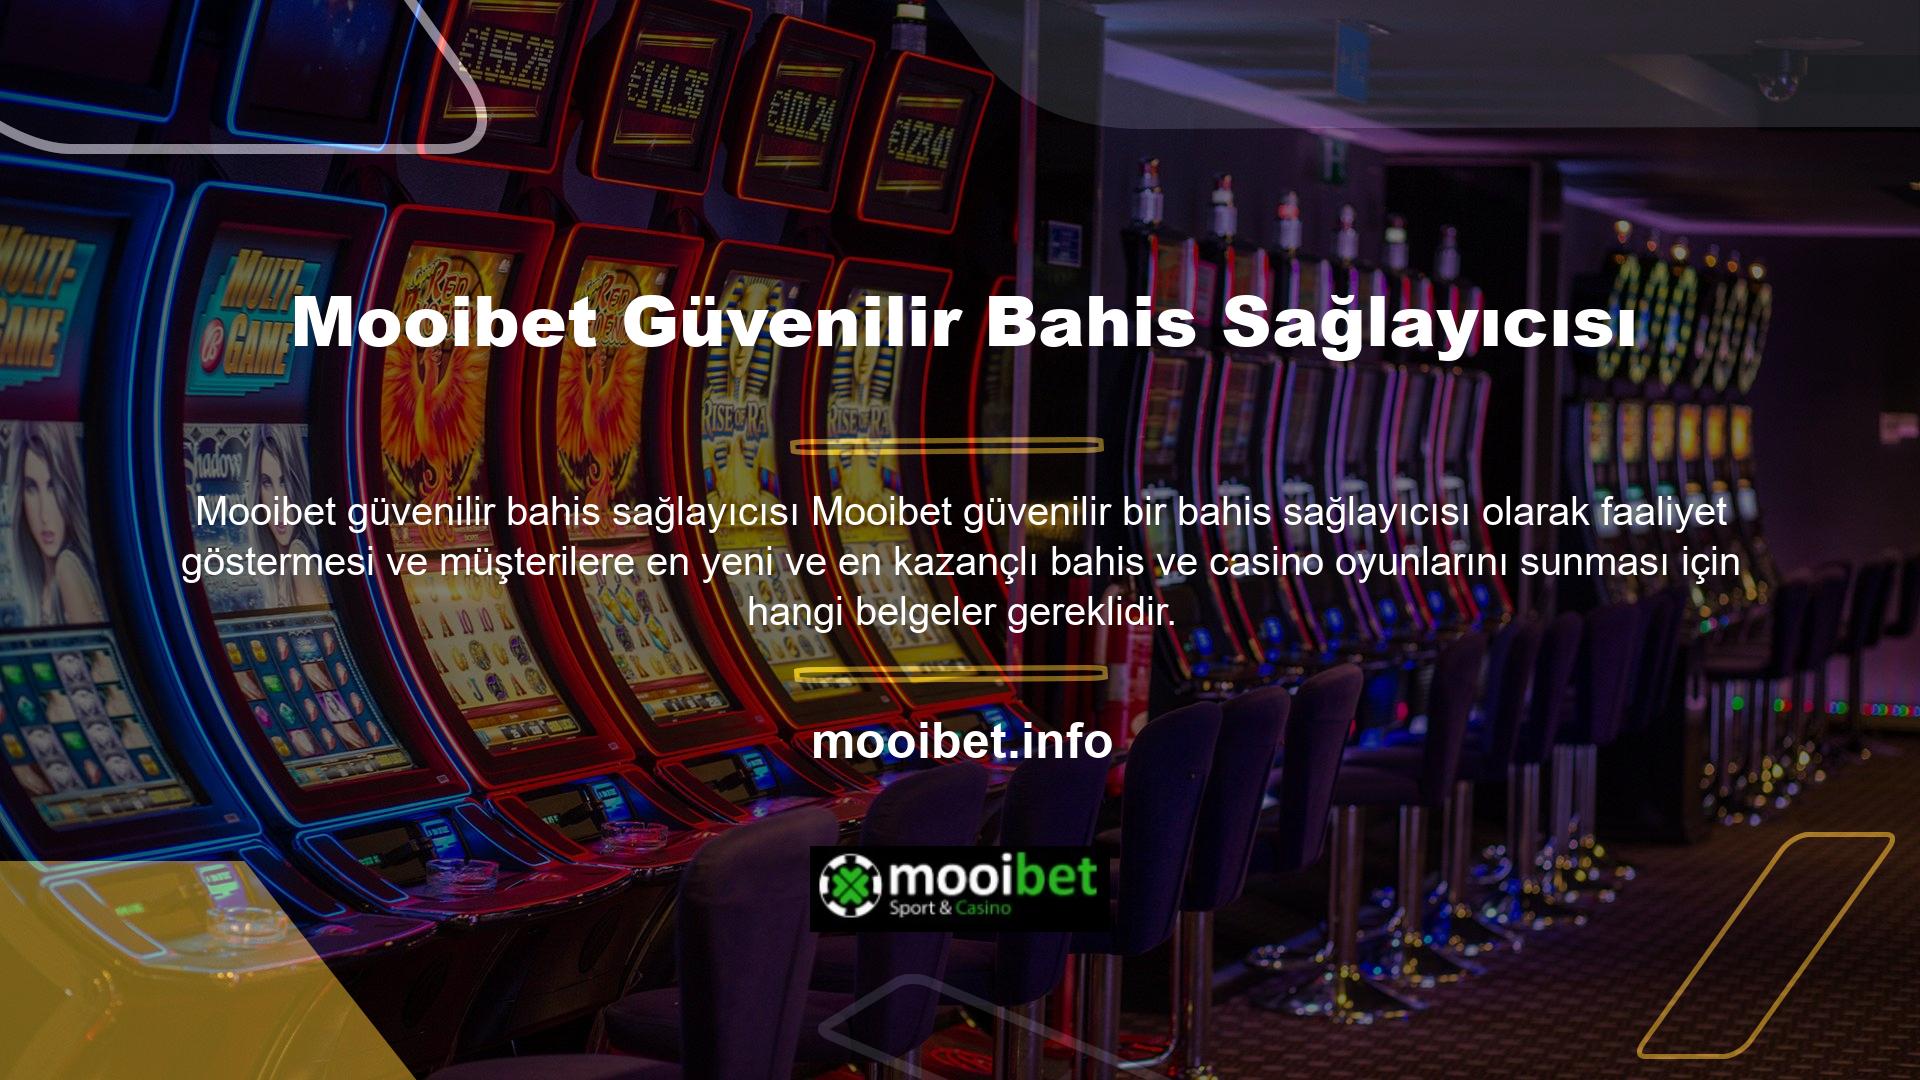 Ne tür belgelere ihtiyaç var? Yüksek çözünürlüklü video casino oyunları ve iddialı oyun seçimleri sayesinde Mooibet, yüksek düzeyde müşteri memnuniyeti sunarak her kullanıcıya kendini özel hissettirmiştir